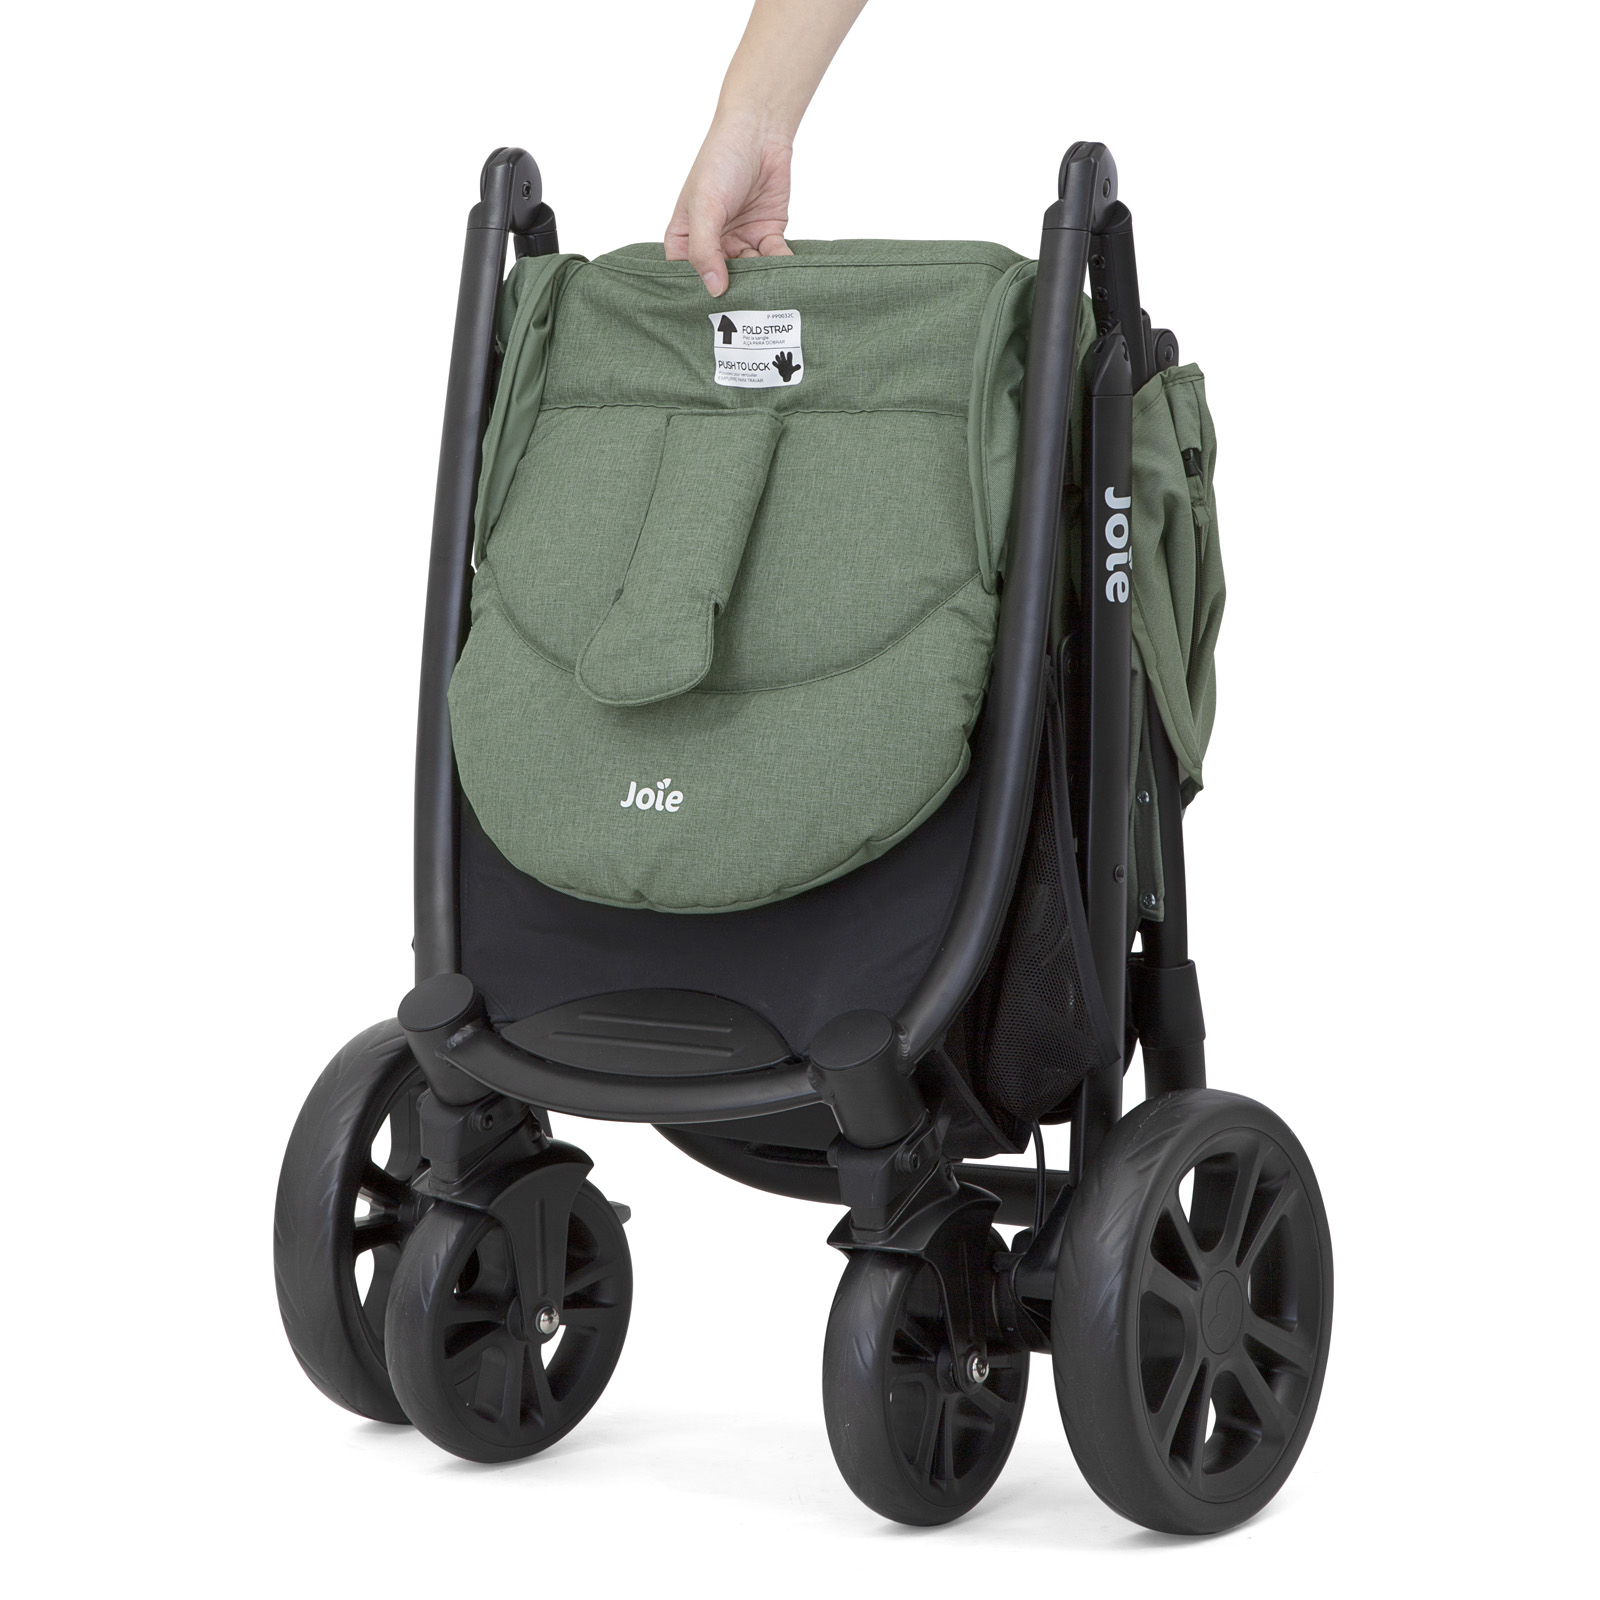 Joie Litetrax 4 Wheel Pushchair Stroller - Laurel | Buy at Online4baby